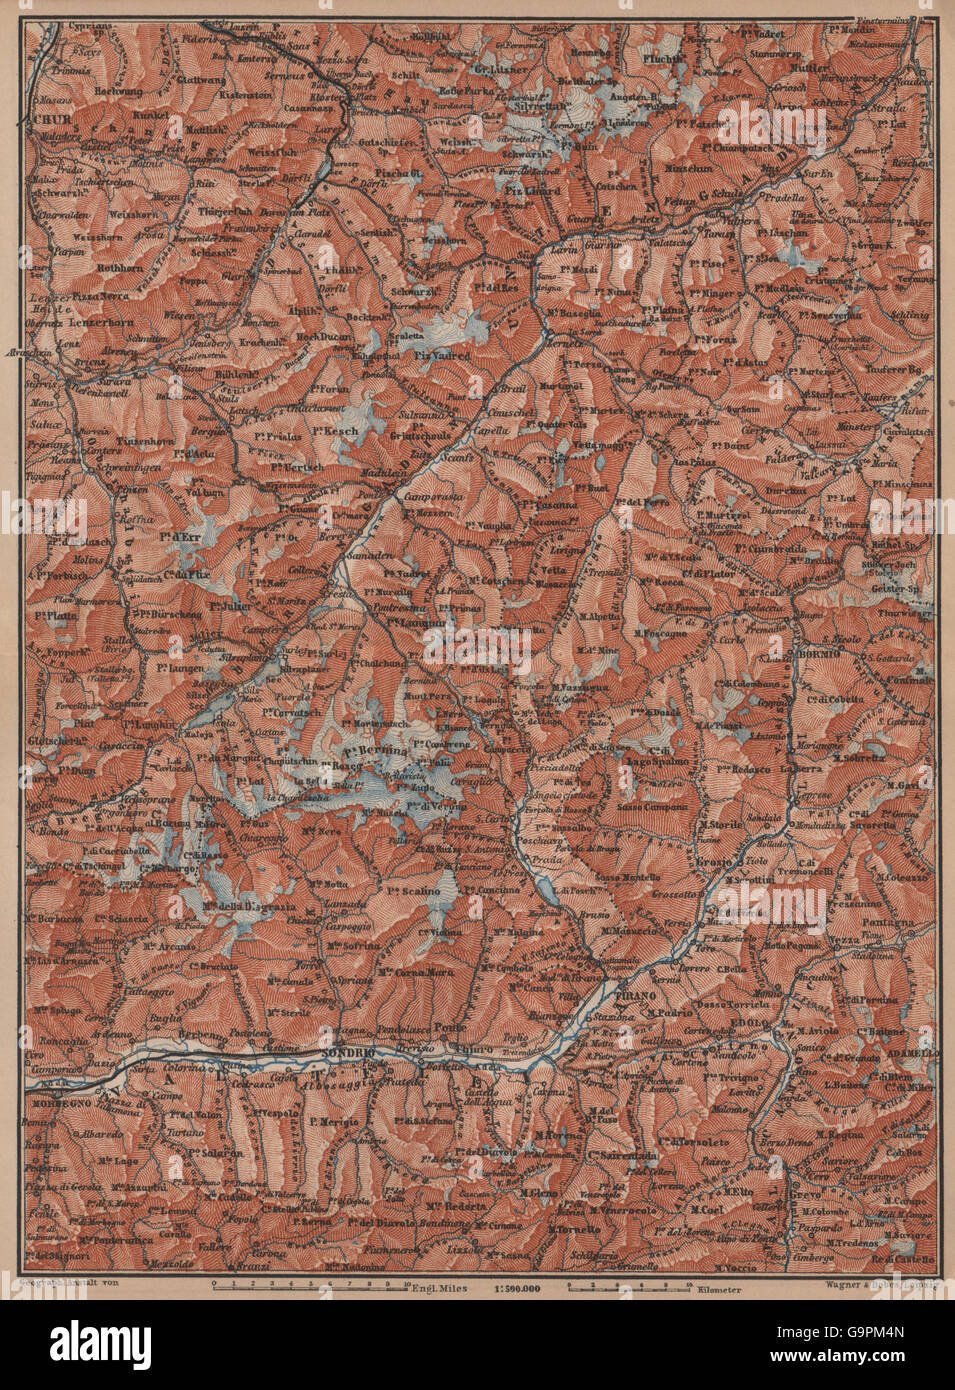 ENGADINE/VAL TELLINA. Davos Arosa Sils Bormio Livigno Sondrio Chur, 1899 map Stock Photo